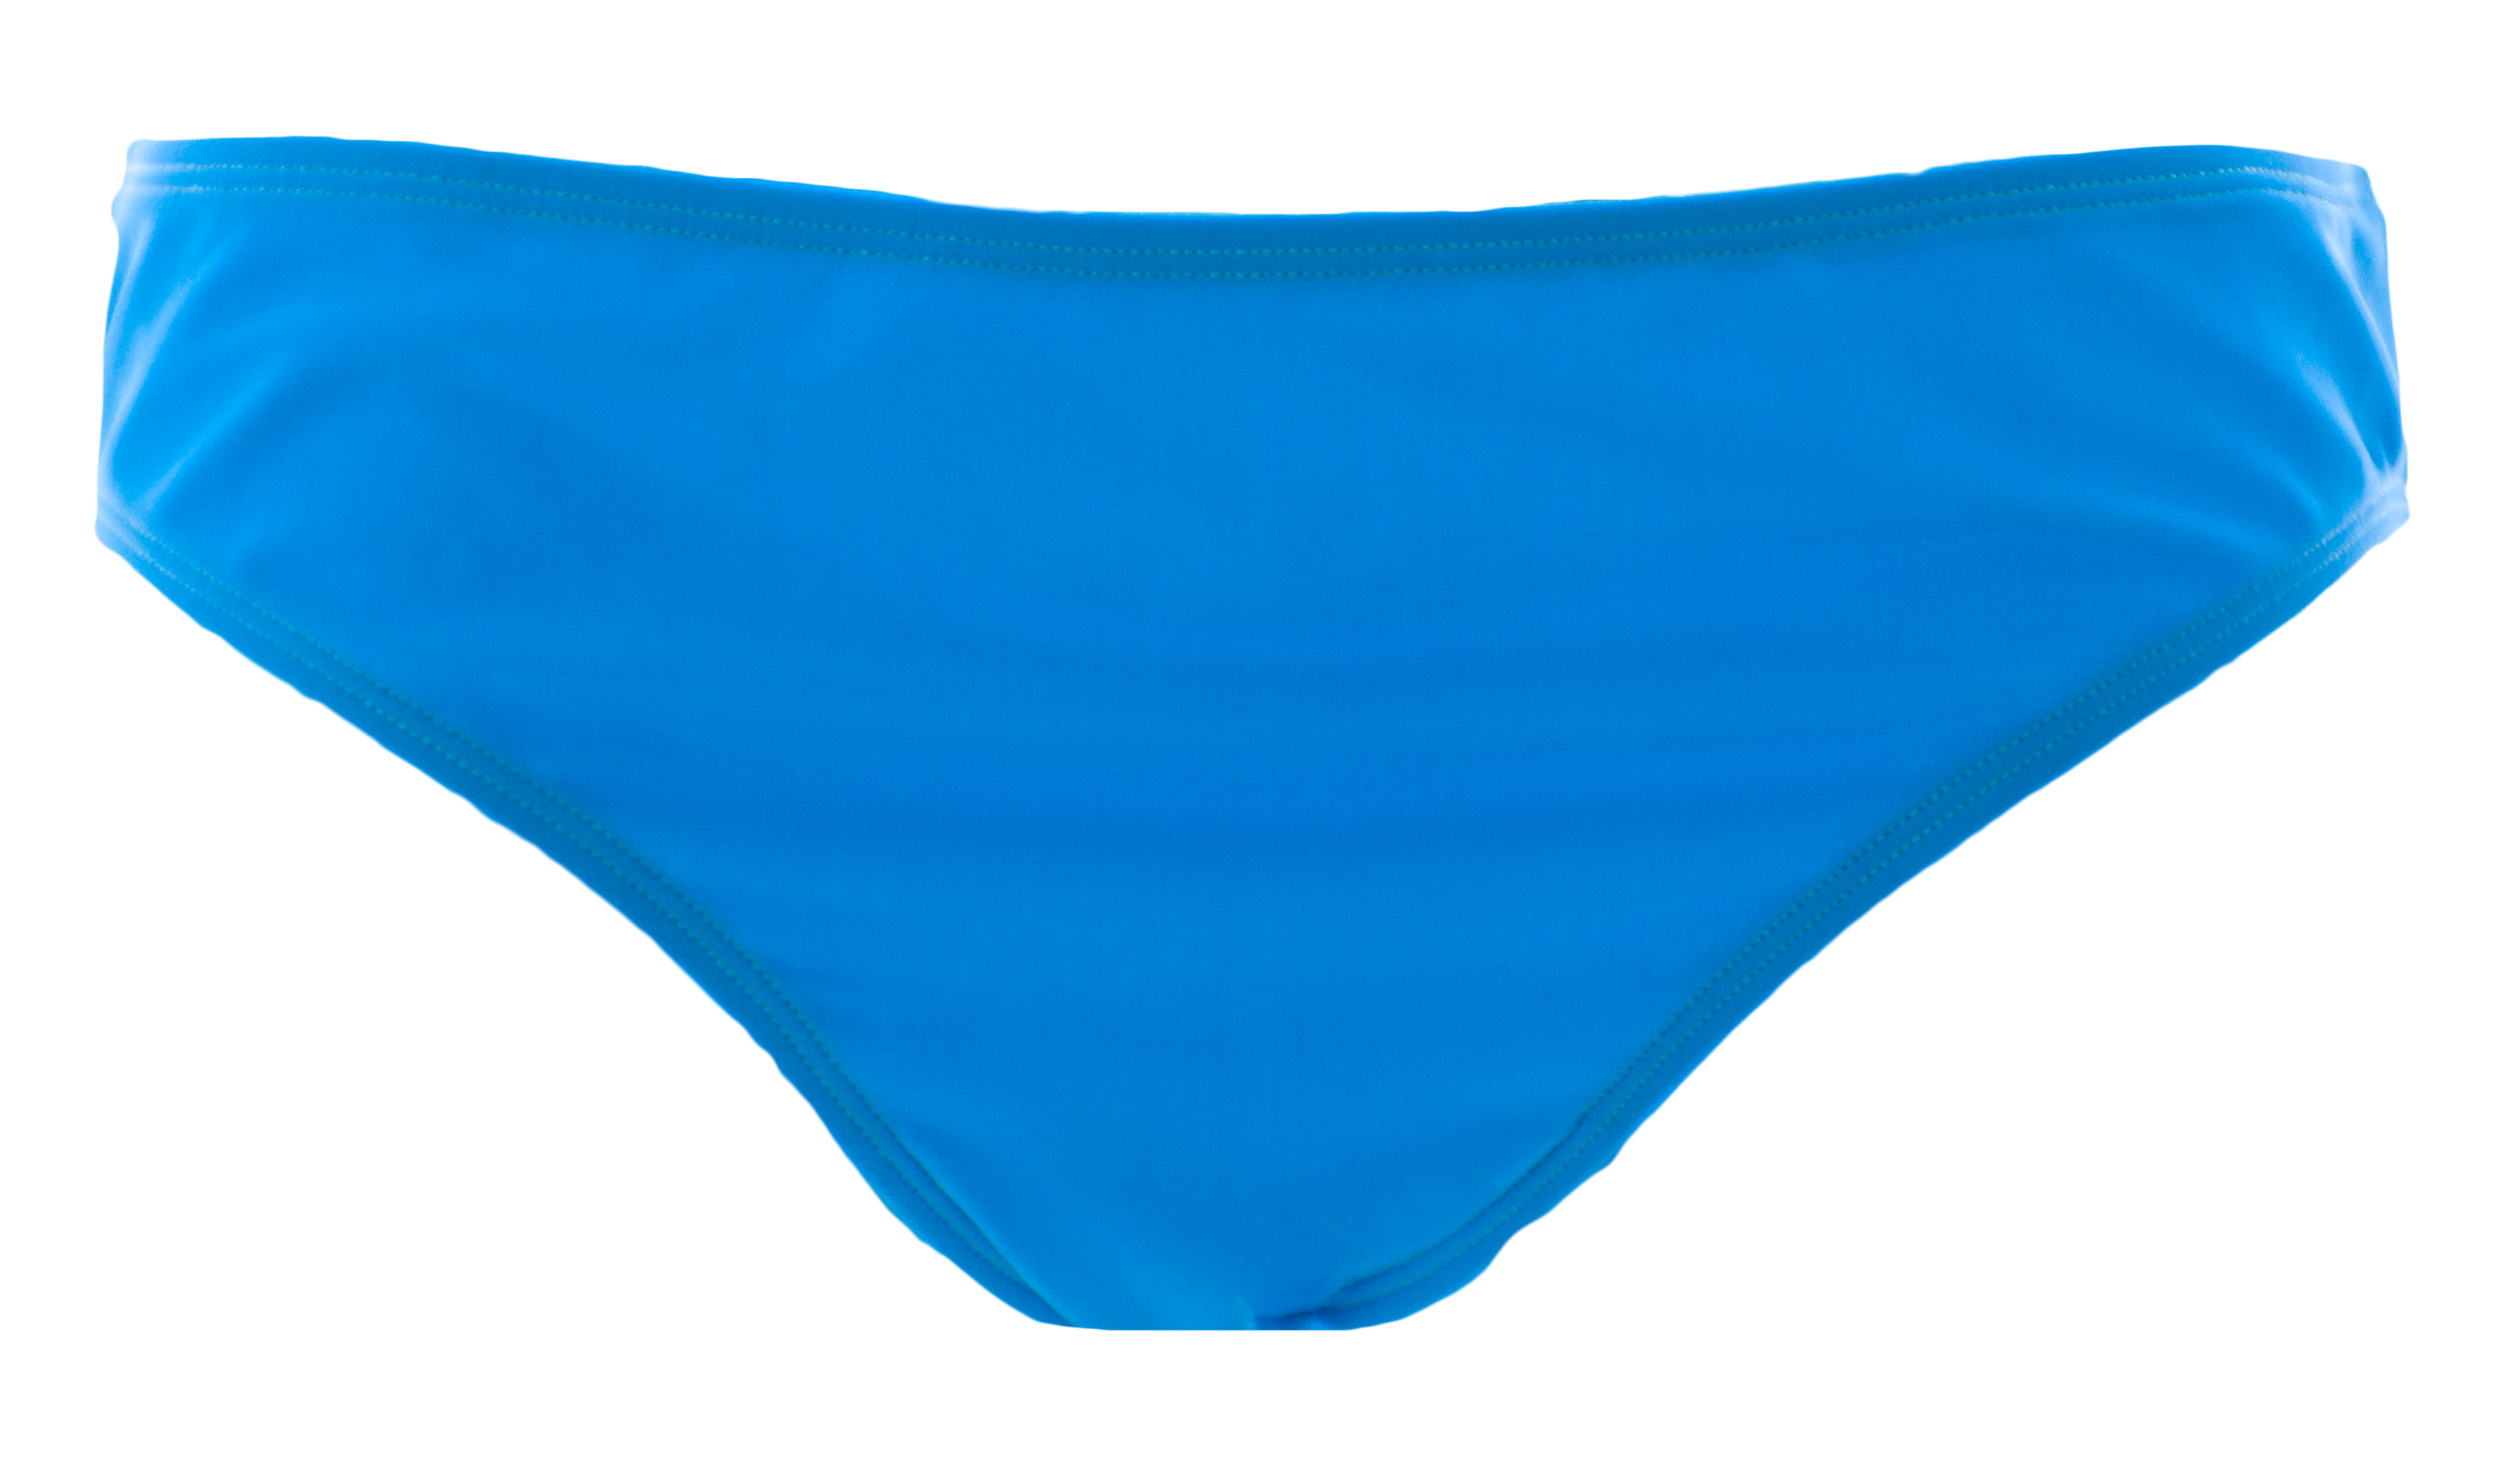 BODEN Women's Dodger Blue Mix & Match Bikini Bottoms WB068 US Sz 12 $39 ...